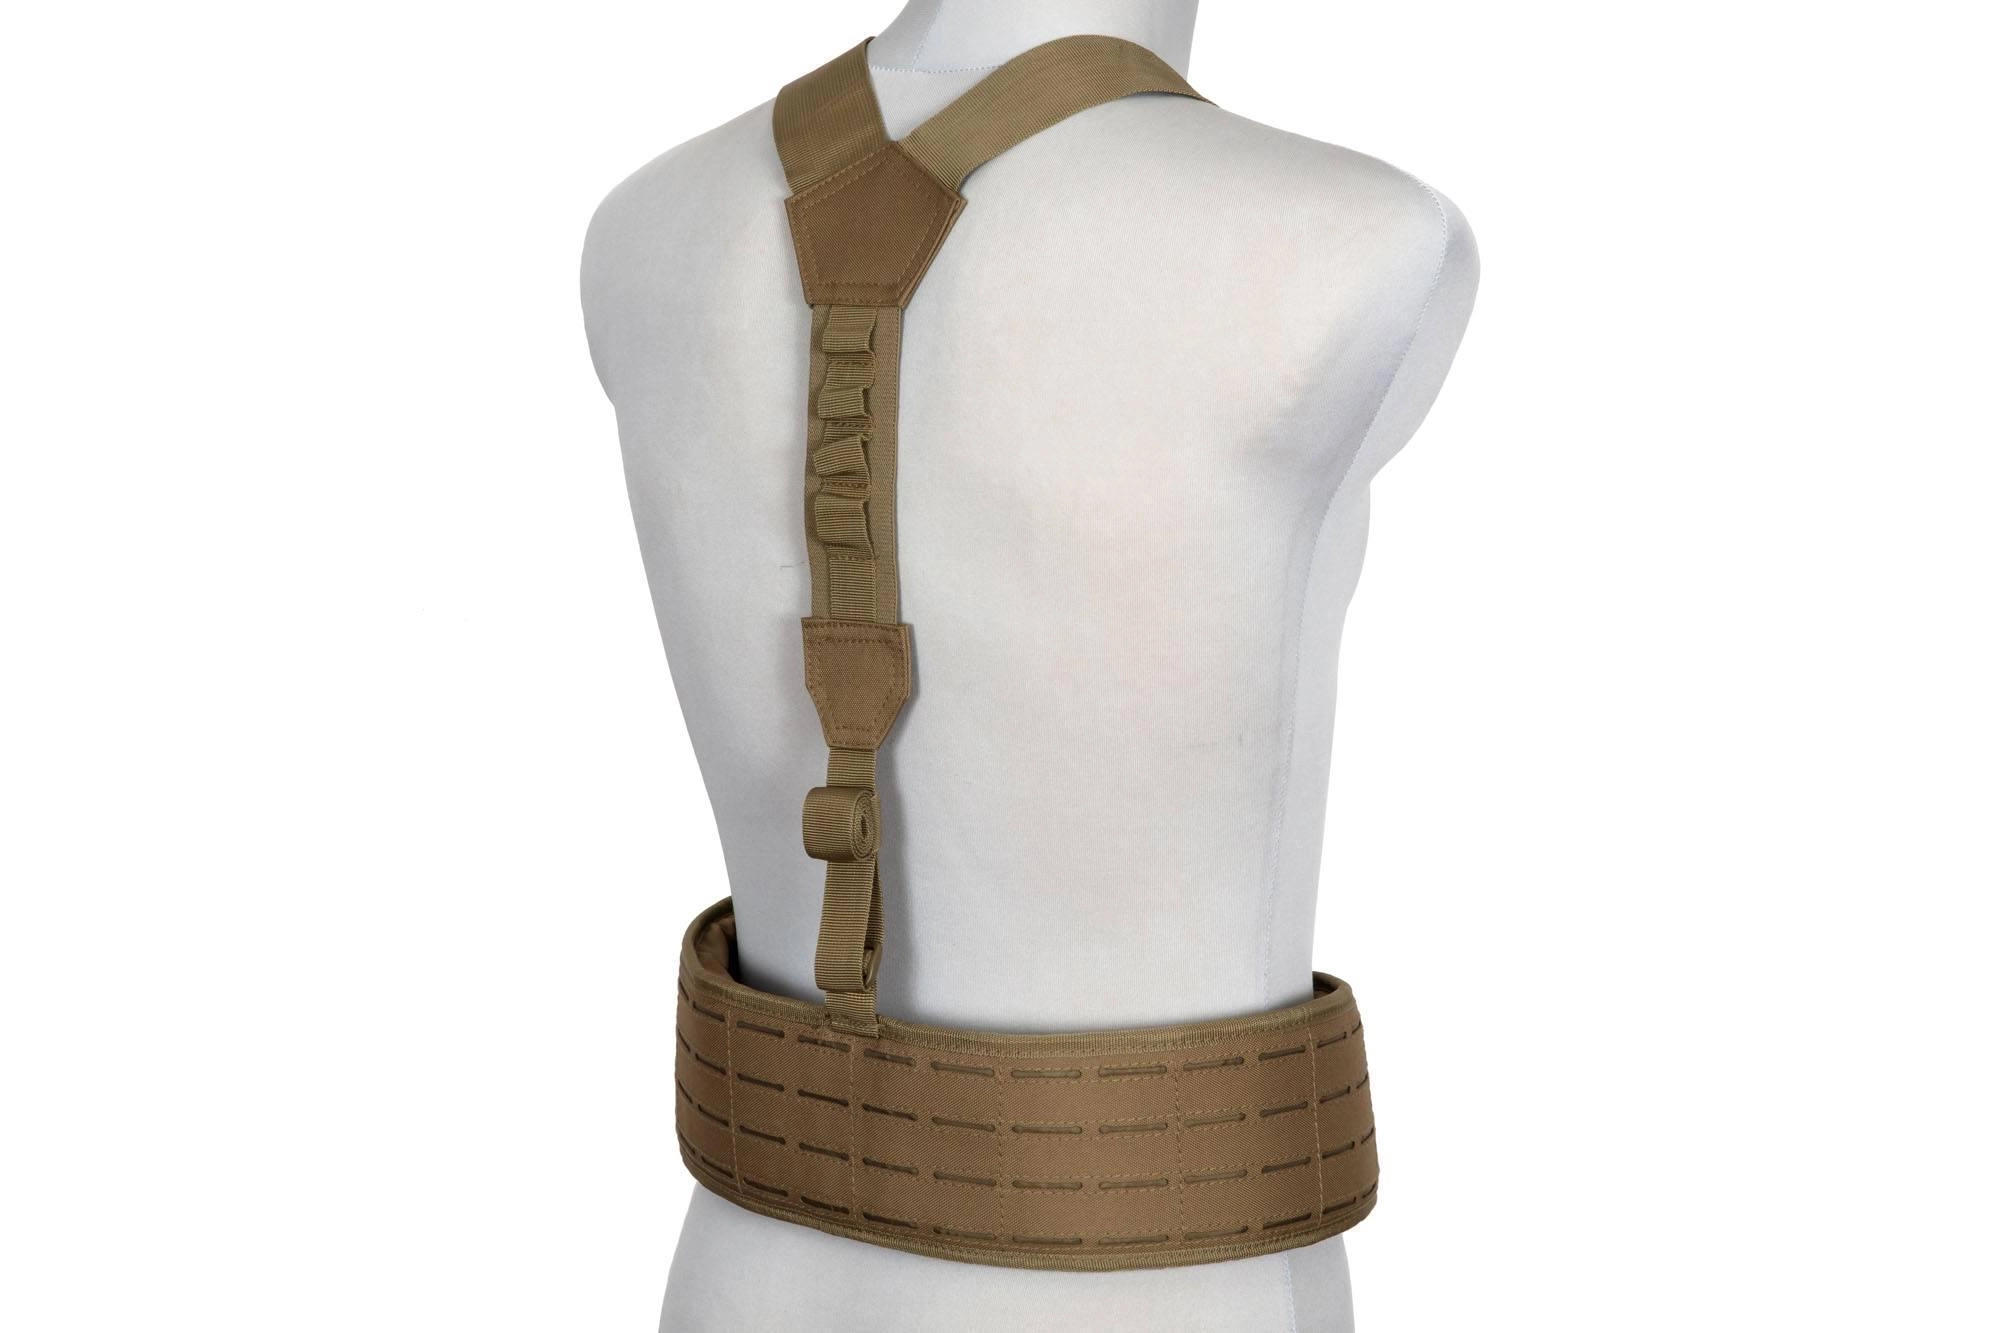 Viper Tactical Skeleton Harness taisteluvyö valjailla - kojootinruskea